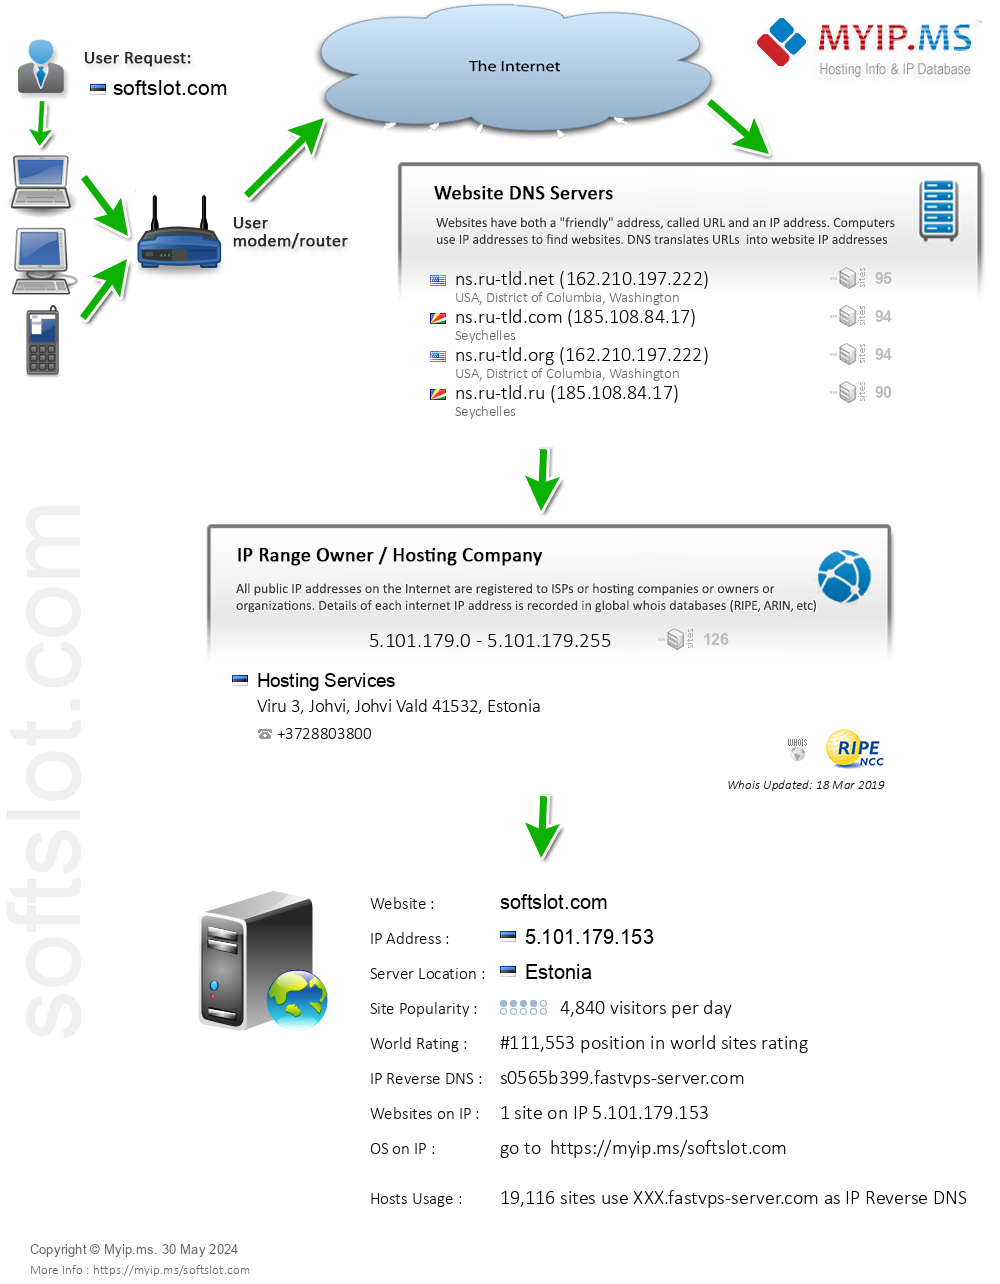 Softslot.com - Website Hosting Visual IP Diagram